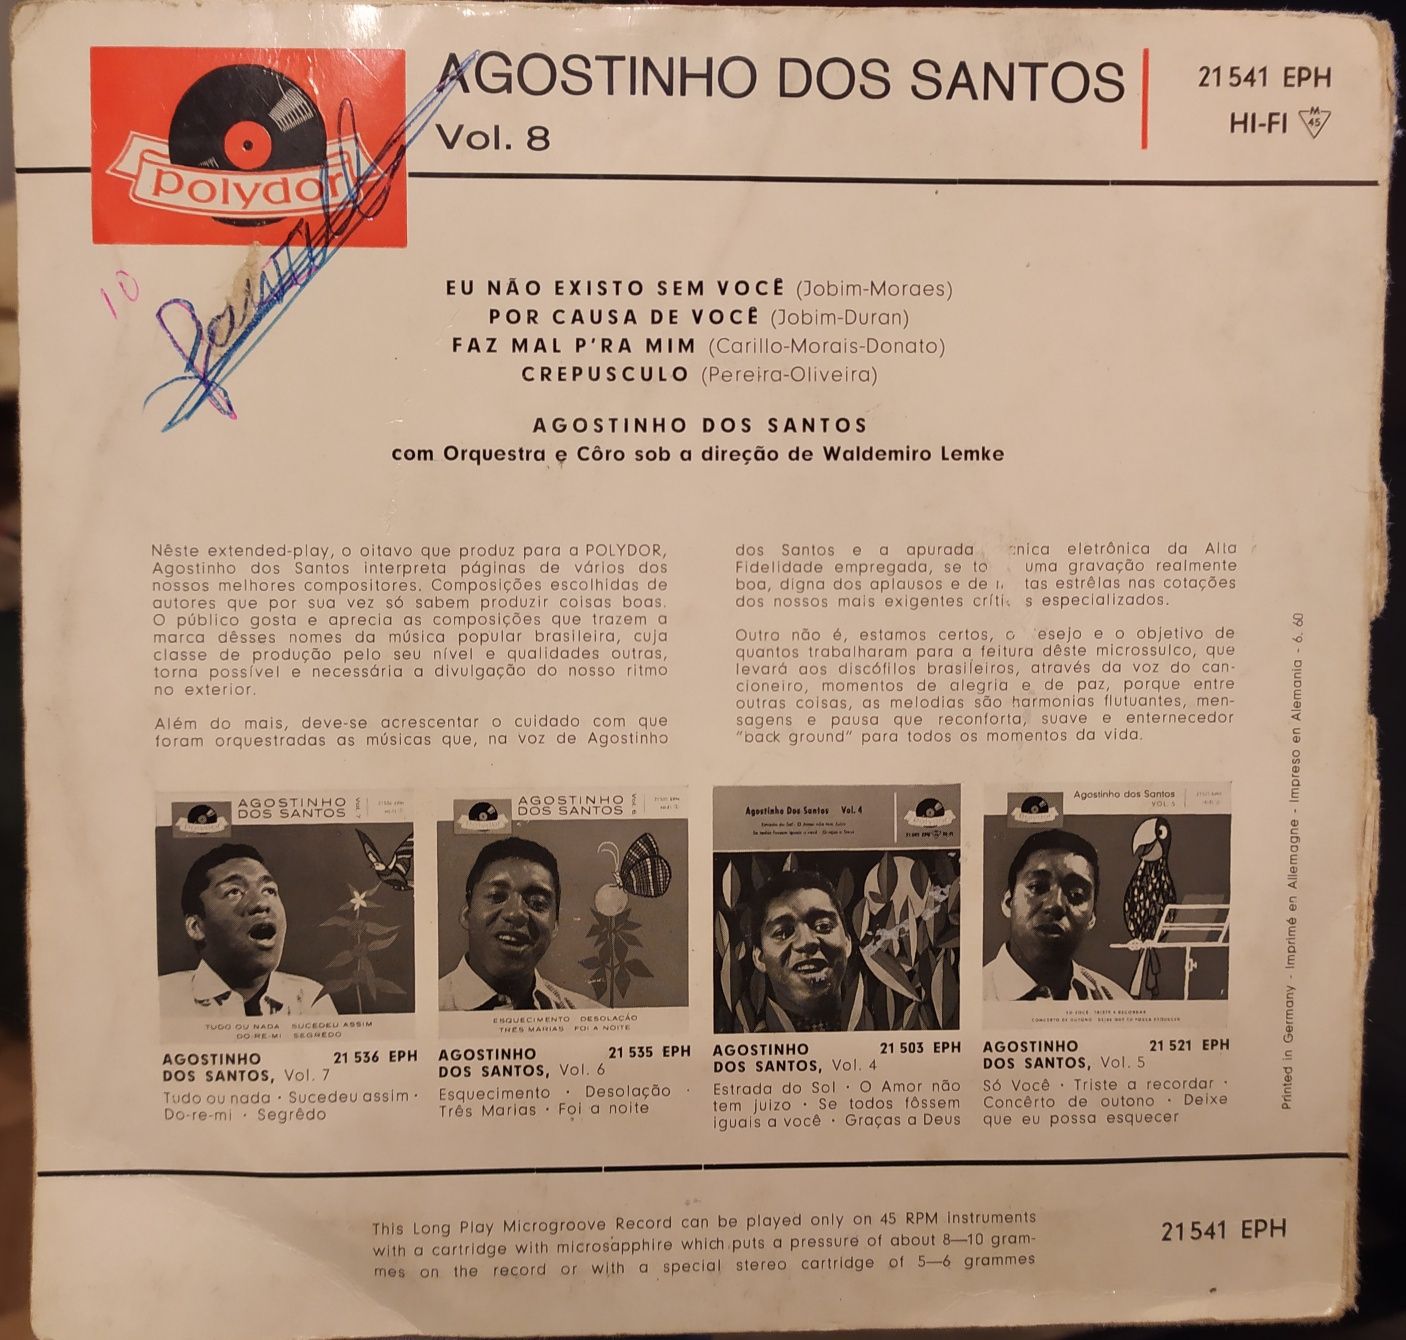 Vinil de Agostinho dos Santos vol.8